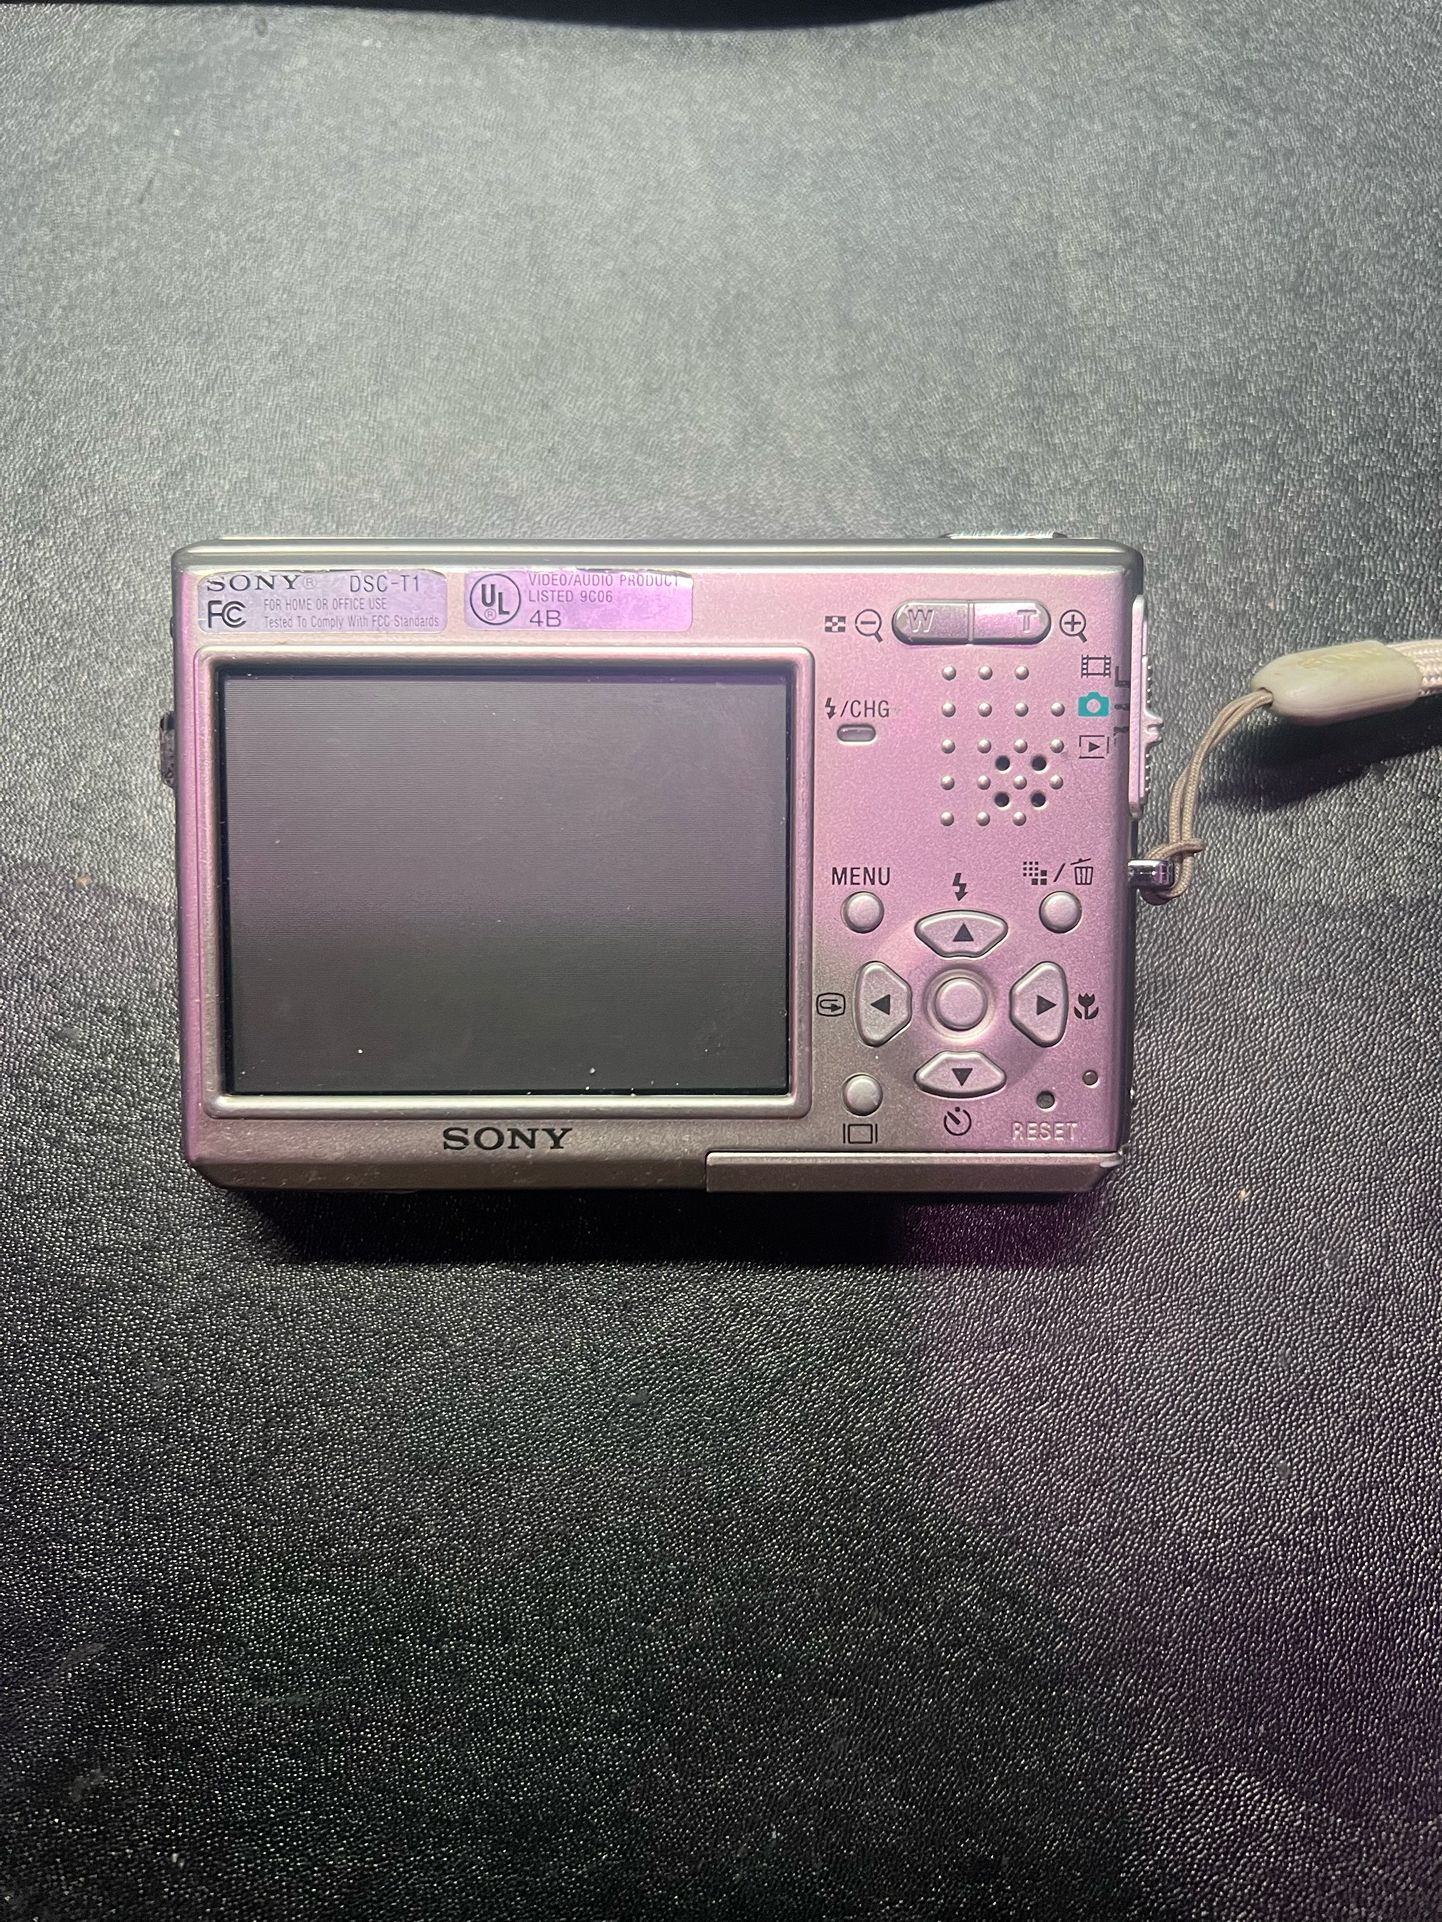 Sony Cyber-shot DSC-T1 5.0MP Digital Camera - Silver for sale